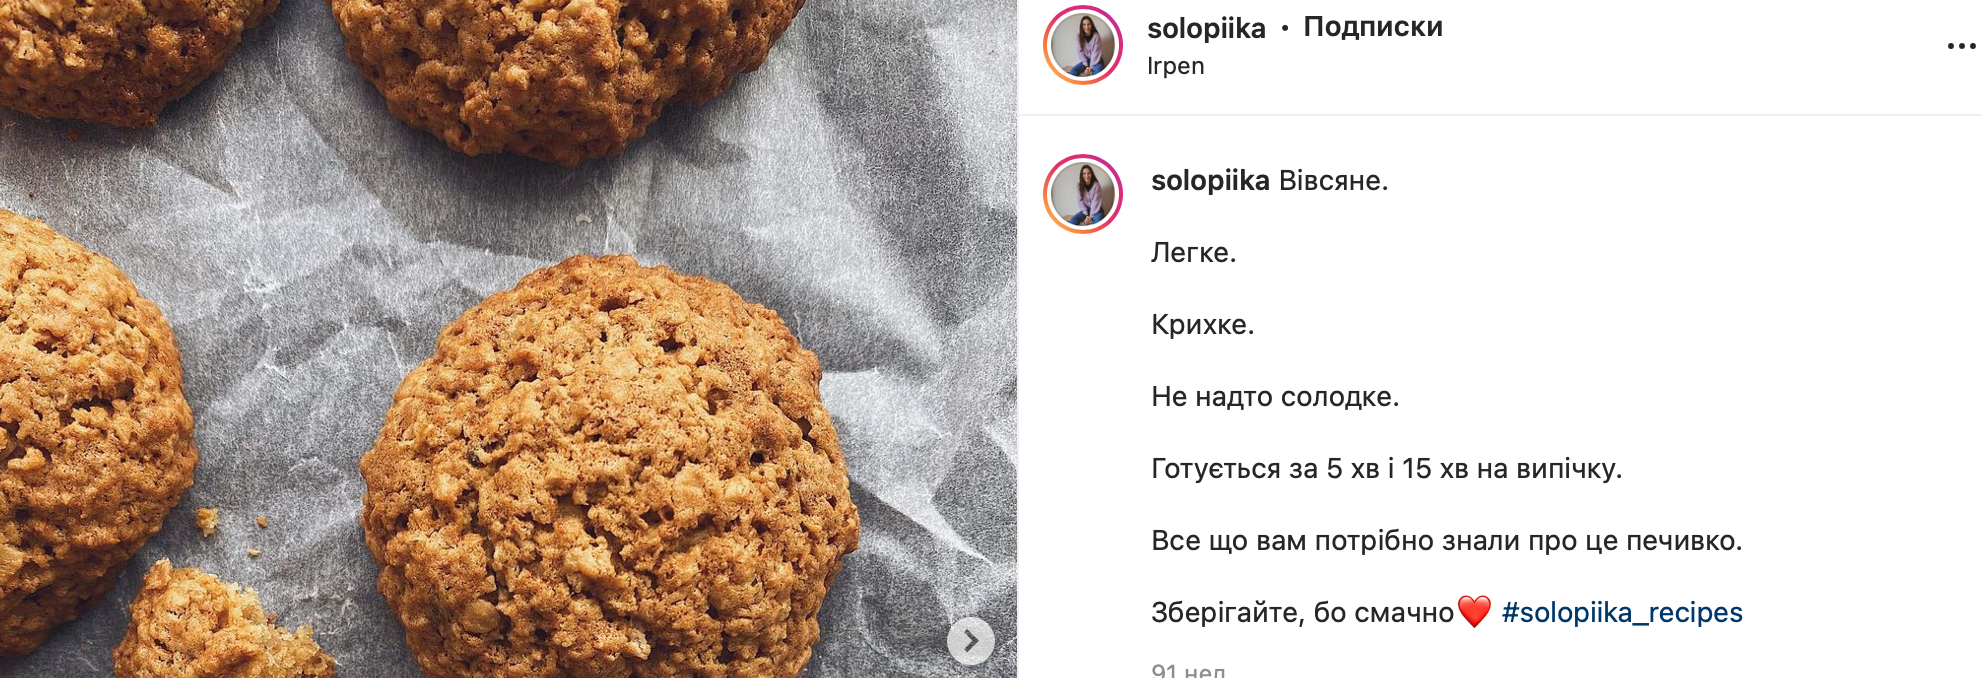 Рецепт печенья от фудблогер